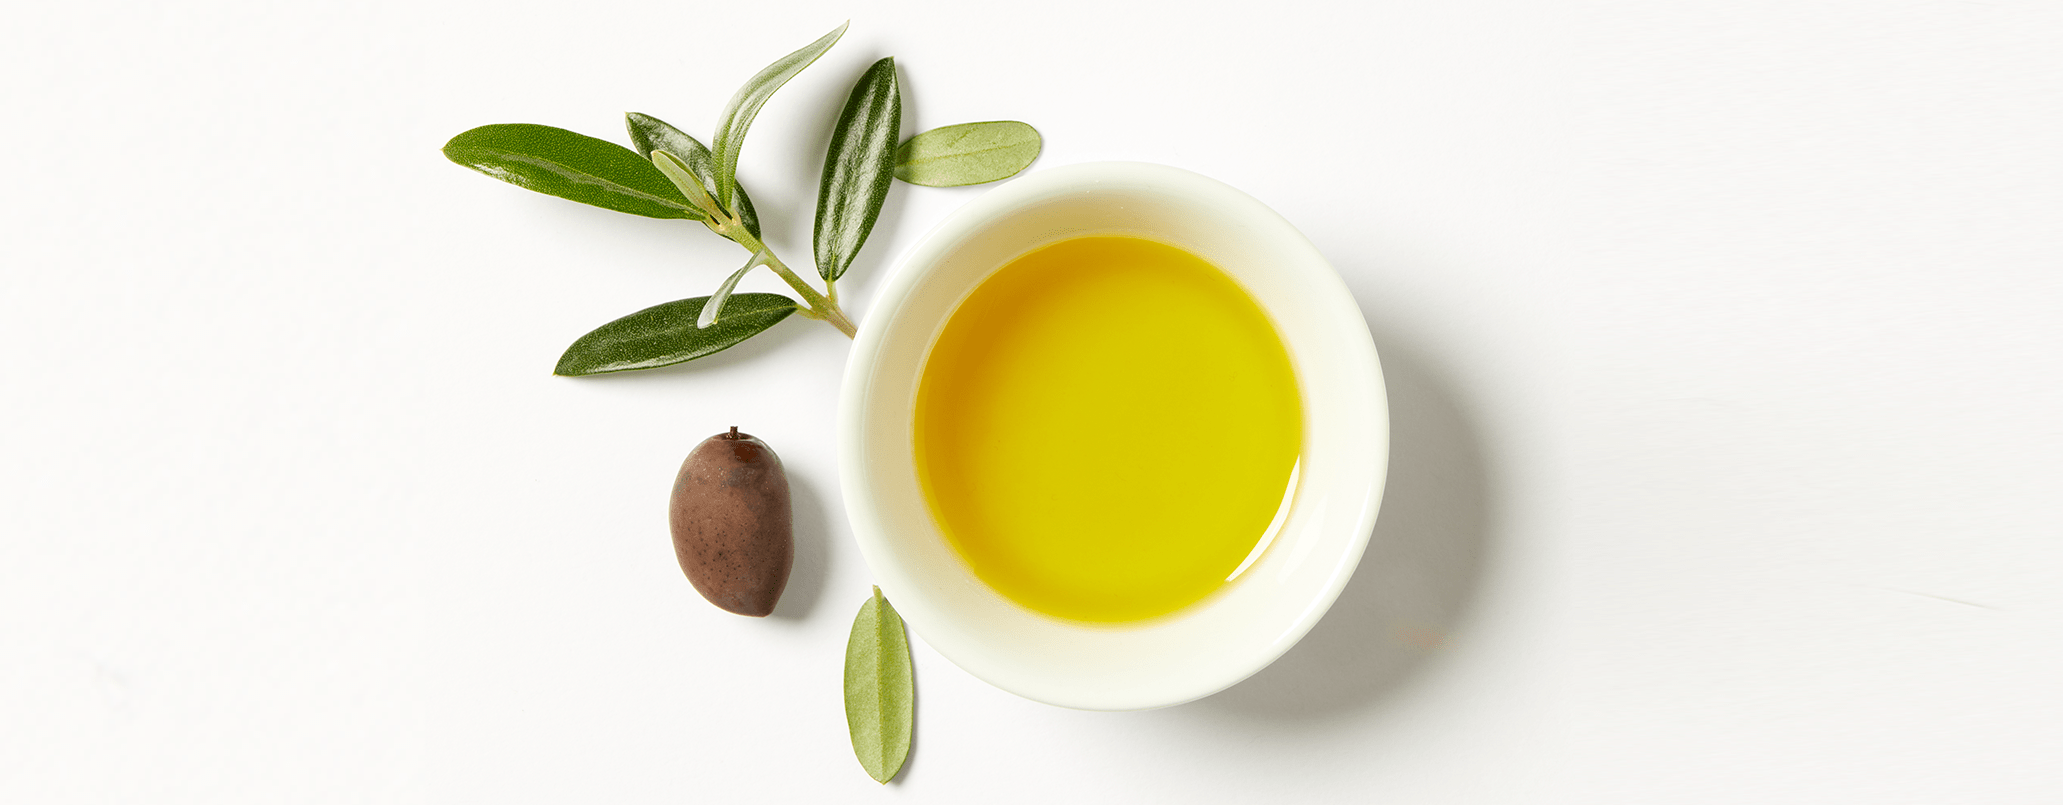 Propiedades del aceite de oliva para la piel